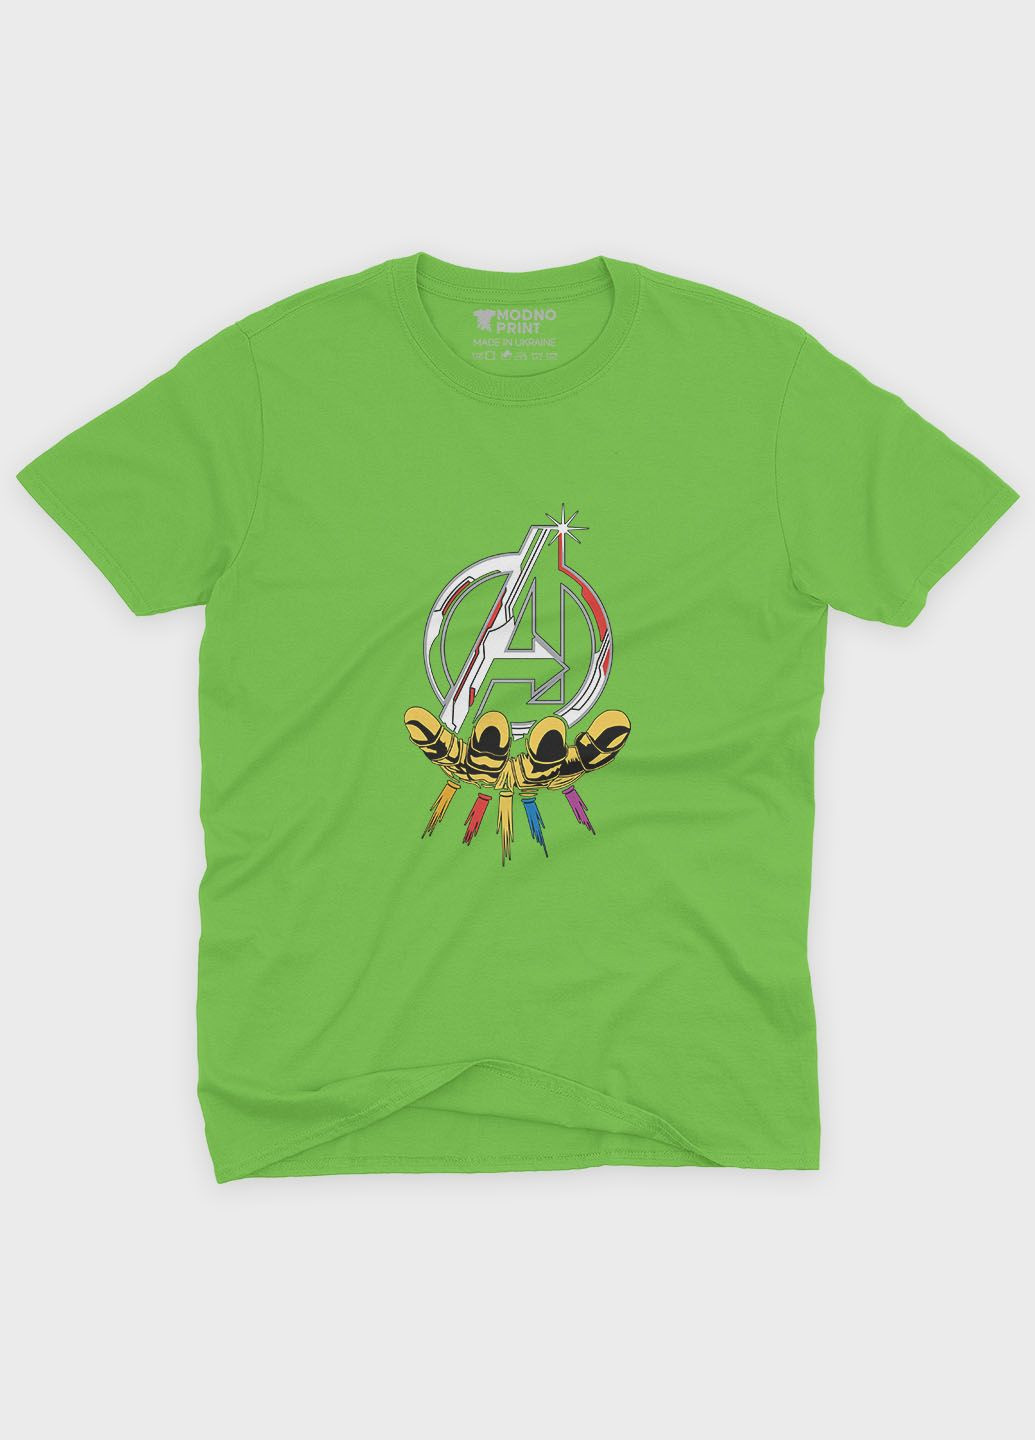 Салатовая демисезонная футболка для мальчика с принтом супергероями - мстители (ts001-1-kiw-006-025-010-b) Modno